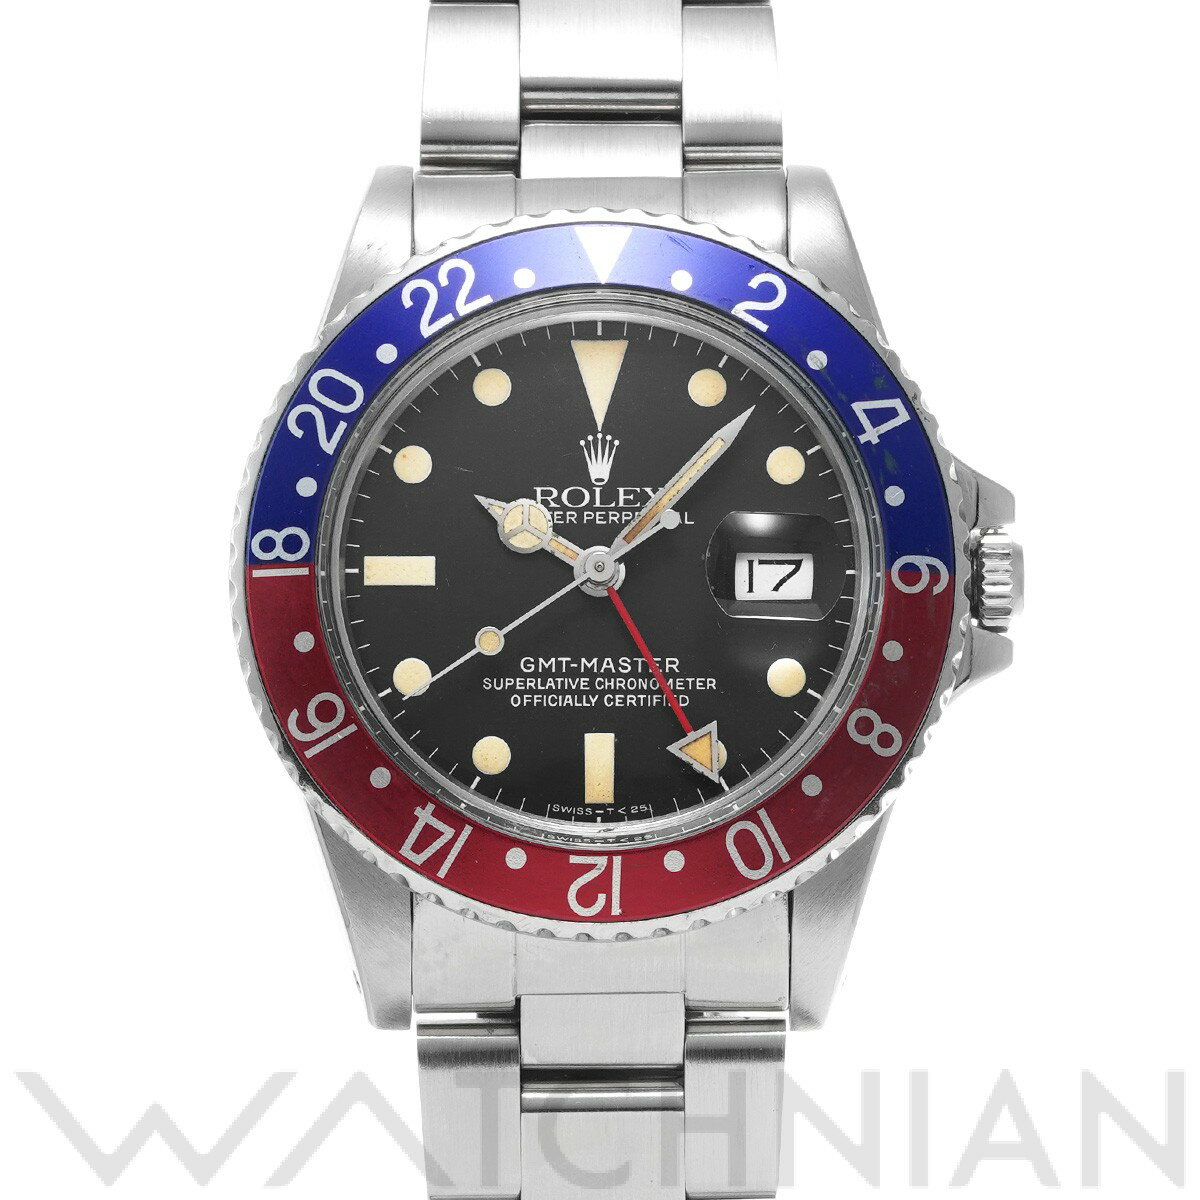 【5種選べるクーポン】【ローン60回払い無金利】【中古】 ロレックス ROLEX GMTマスター 16750 72番台(1982年頃製造) ブラック メンズ 腕時計 ロレックス 時計 高級腕時計 ブランド